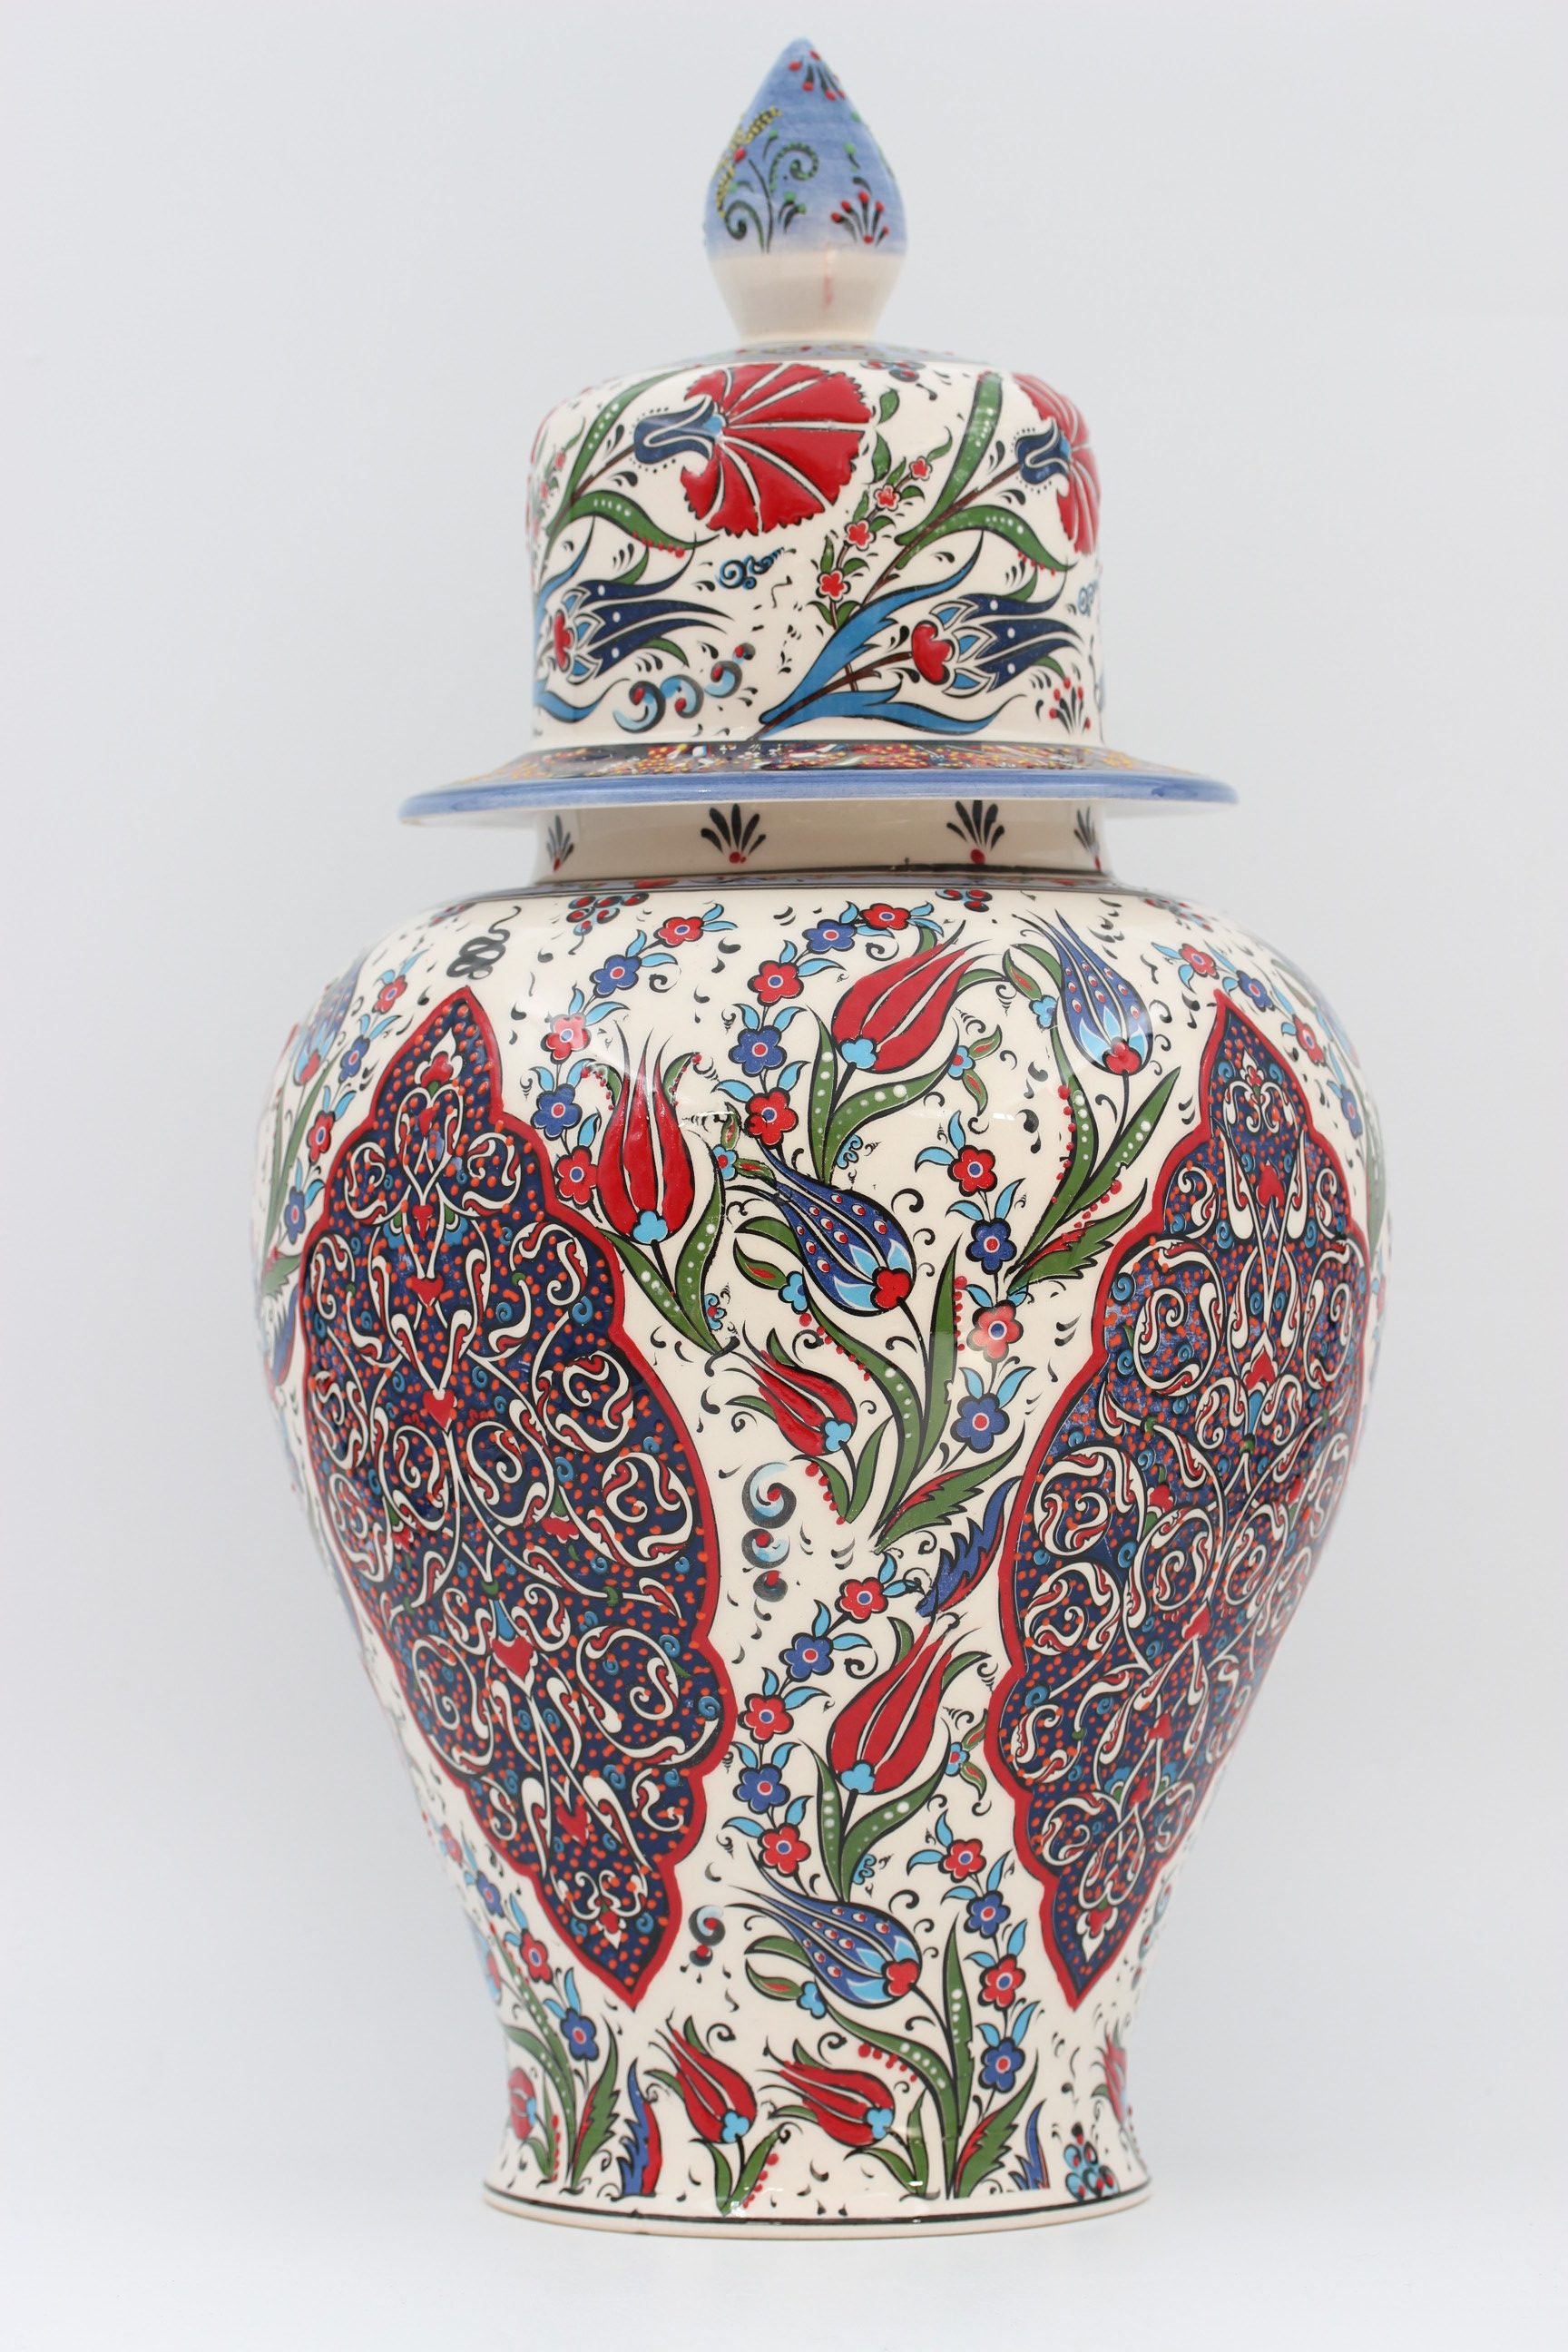 Cm Hand Made Turkish Ceramic Shah Vase In Tulip Design Nirvana